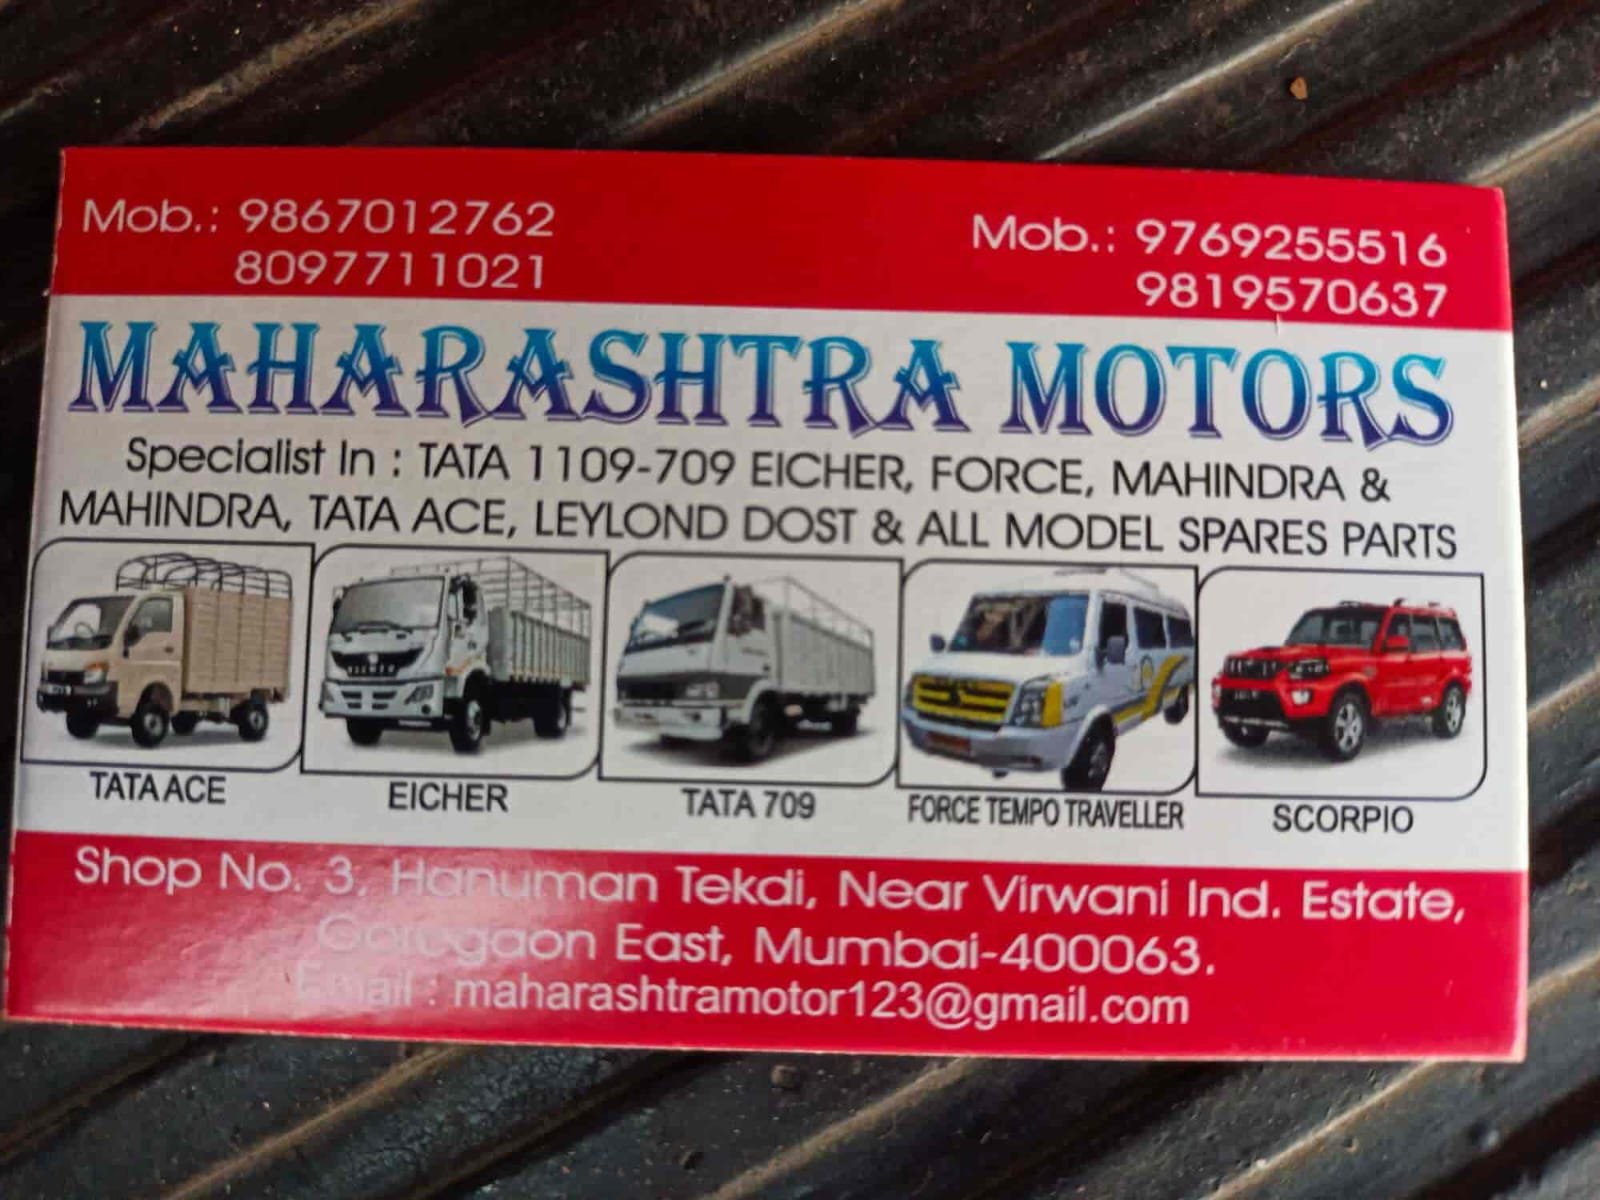 Maharashtra Motors